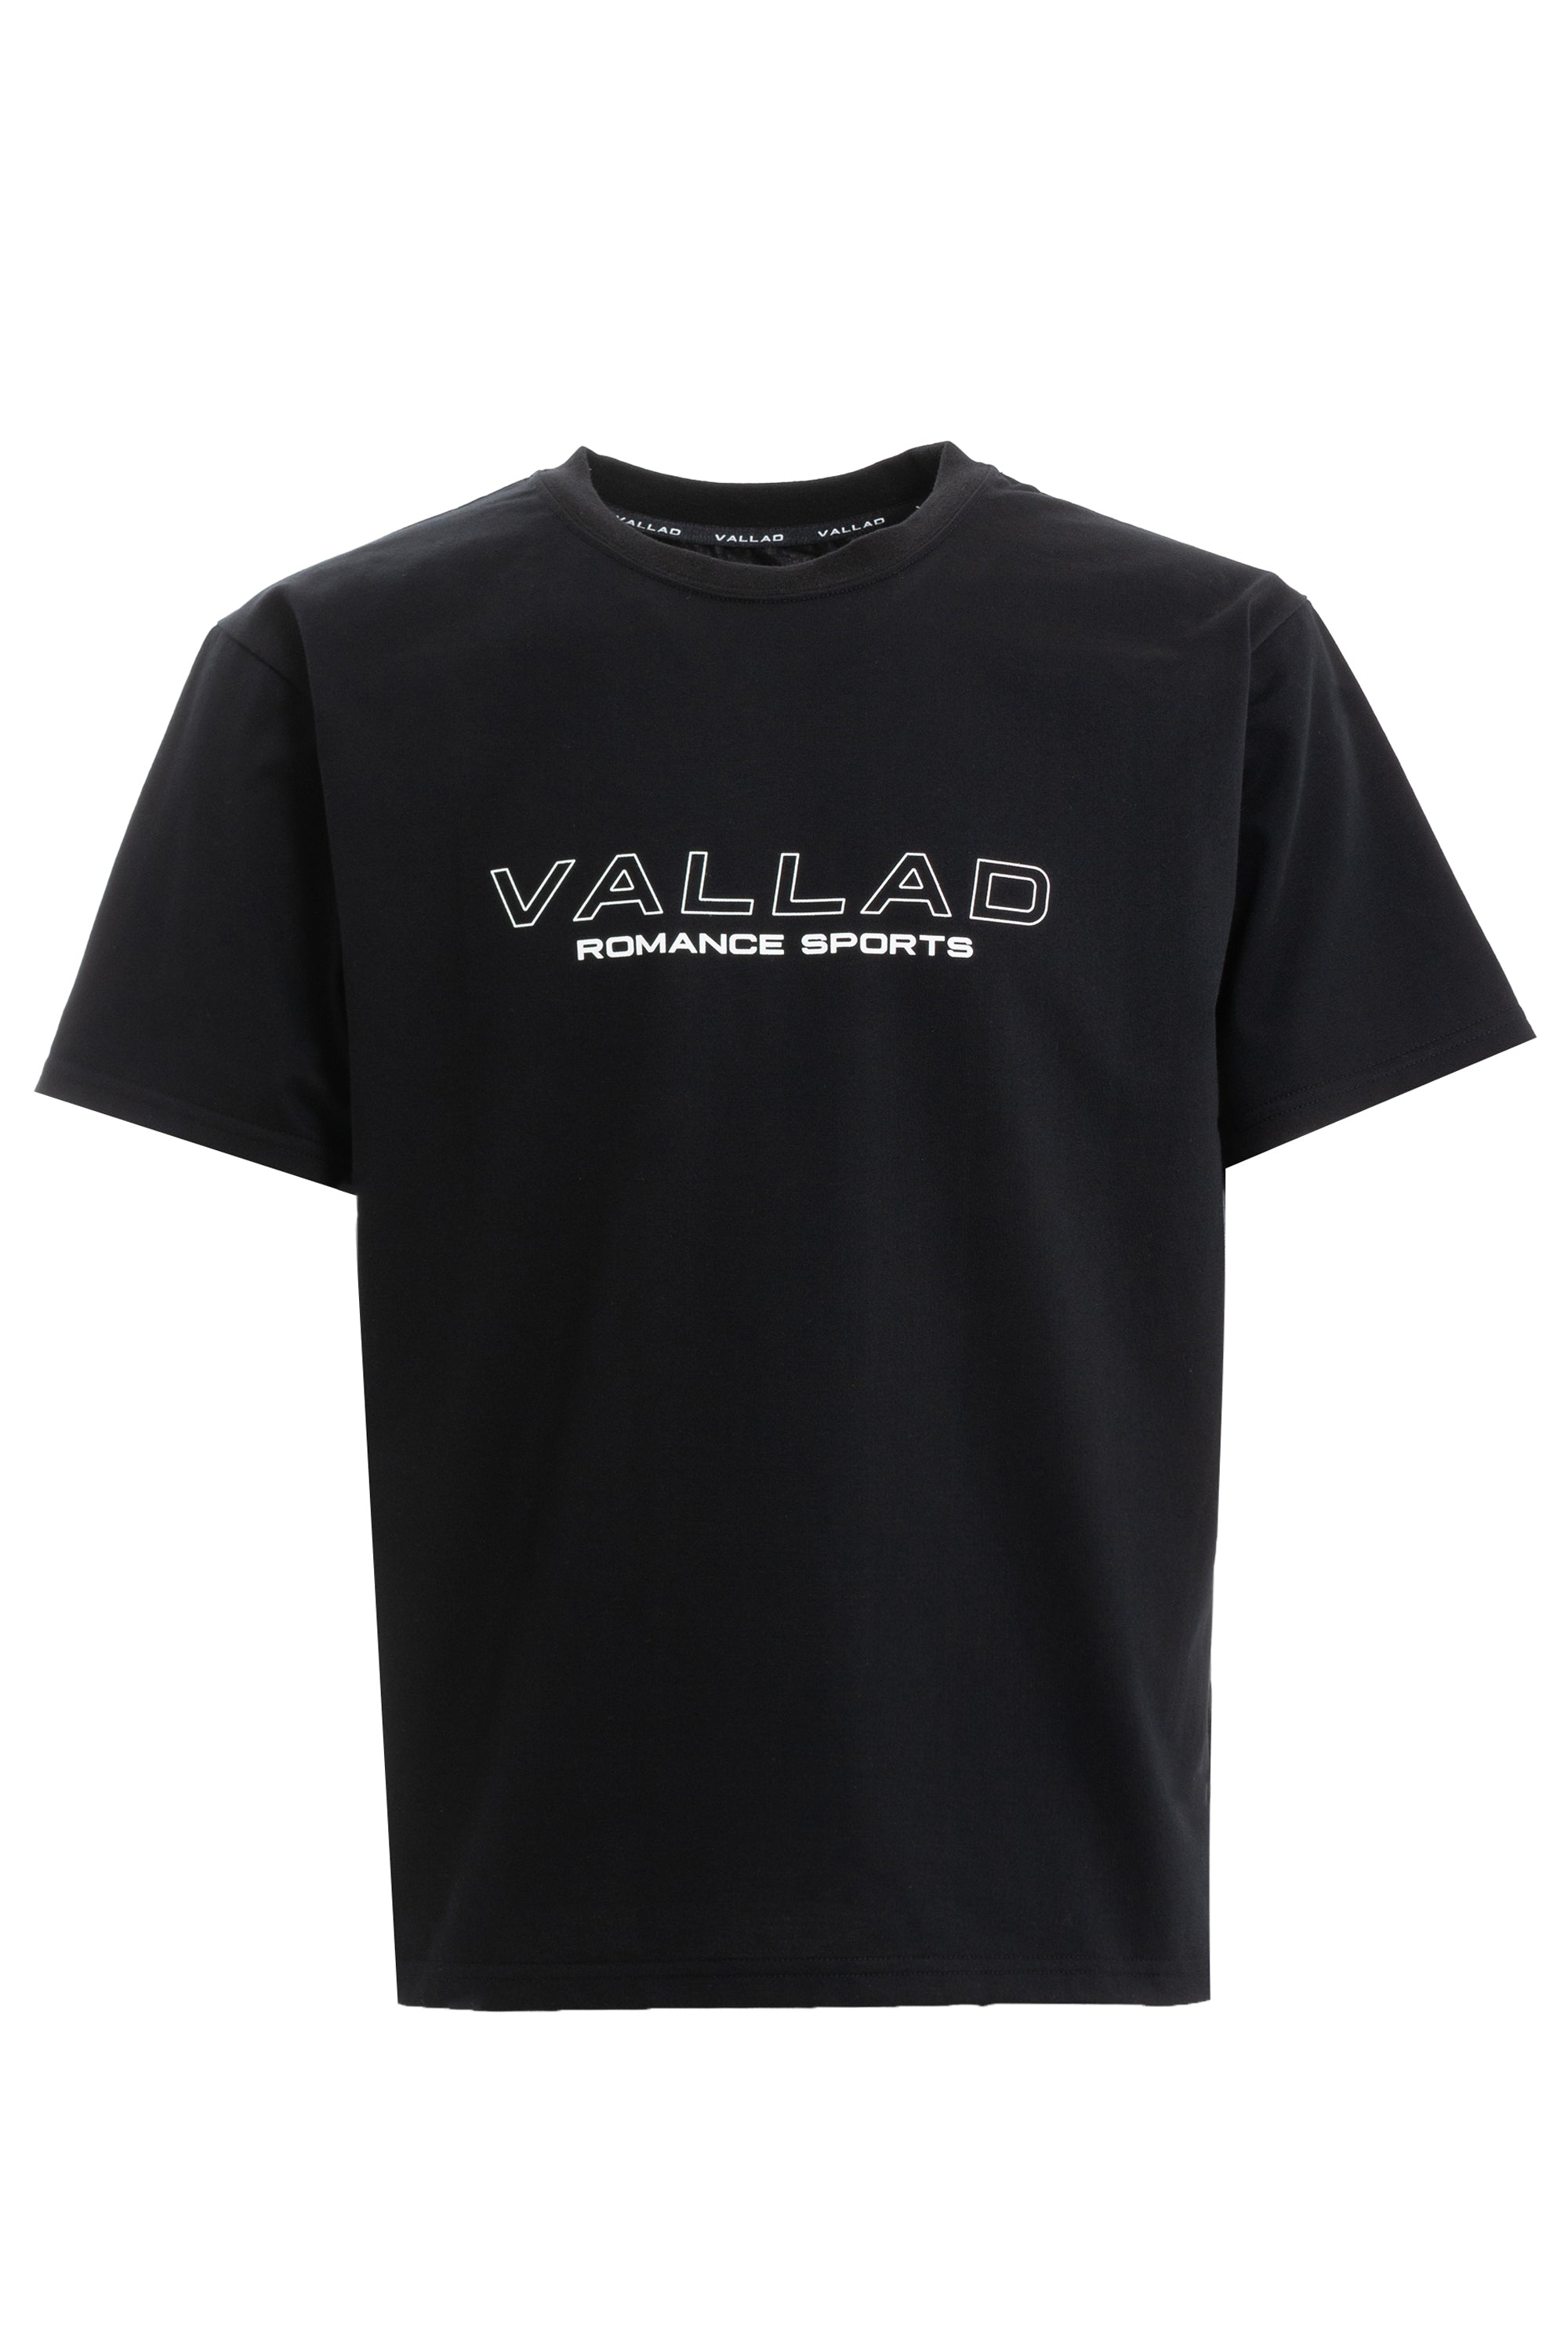 VALLAD romance sports tシャツ XL - Tシャツ/カットソー(半袖/袖なし)